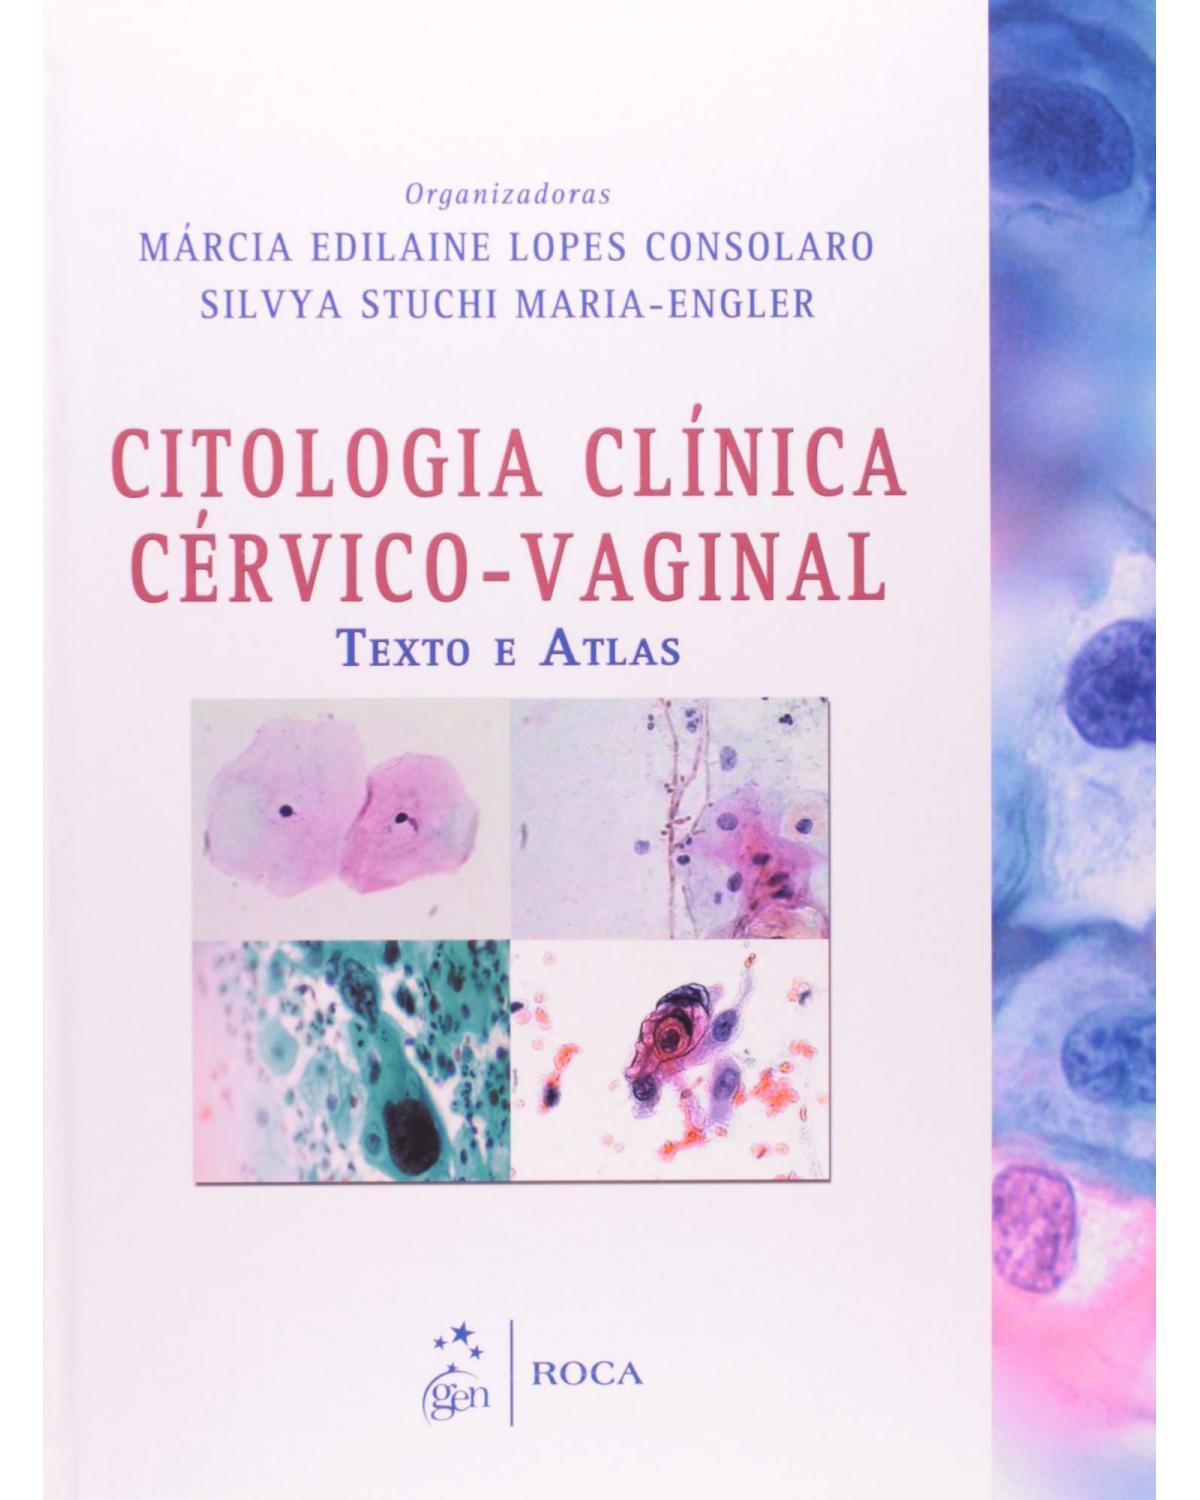 Citologia clínica cérvico-vaginal - Texto e atlas - 1ª Edição | 2012